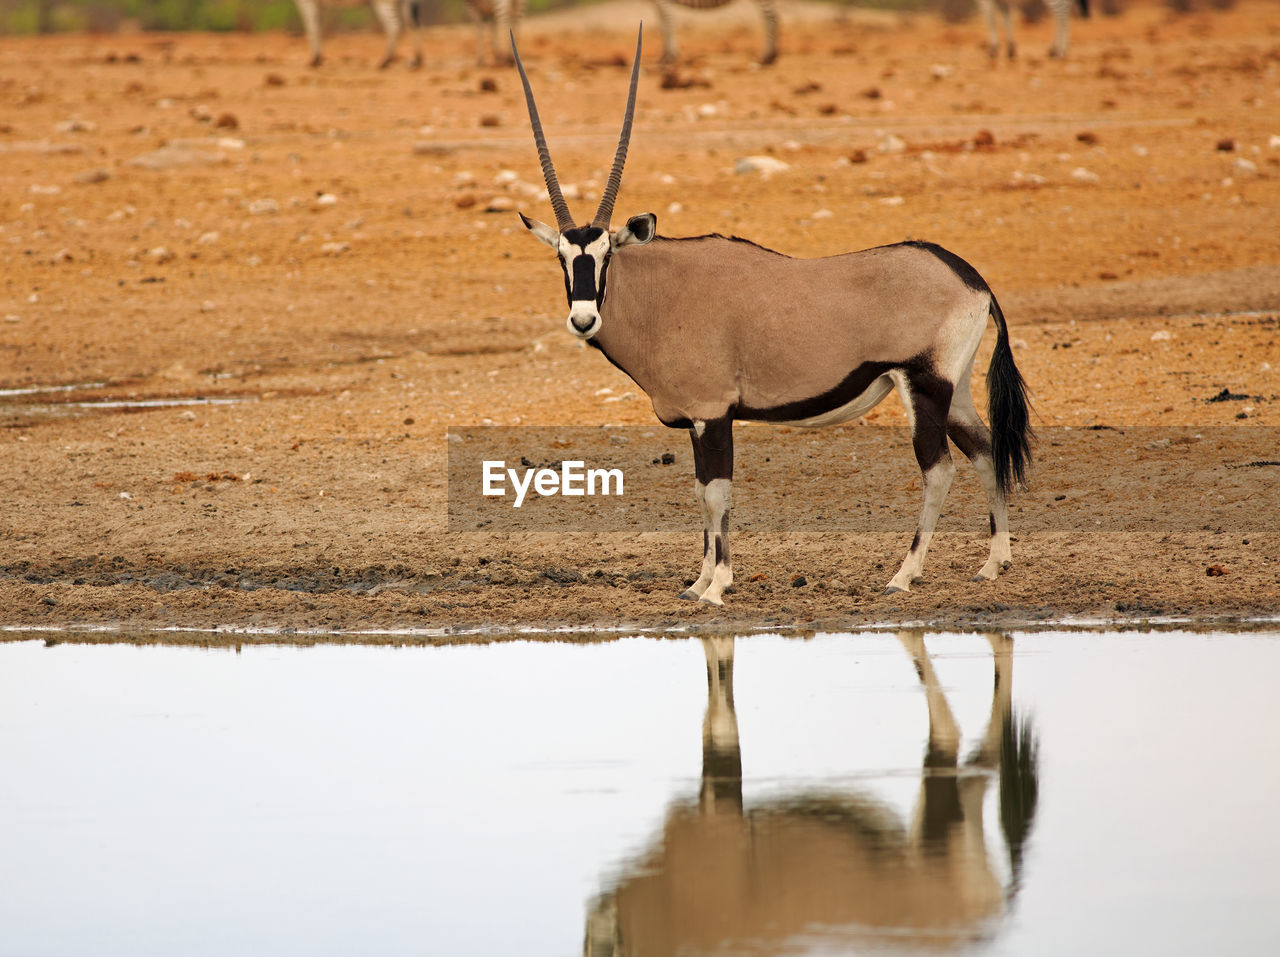 Gemsbok oryx standing beside a still waterhole, with lovely reflection 